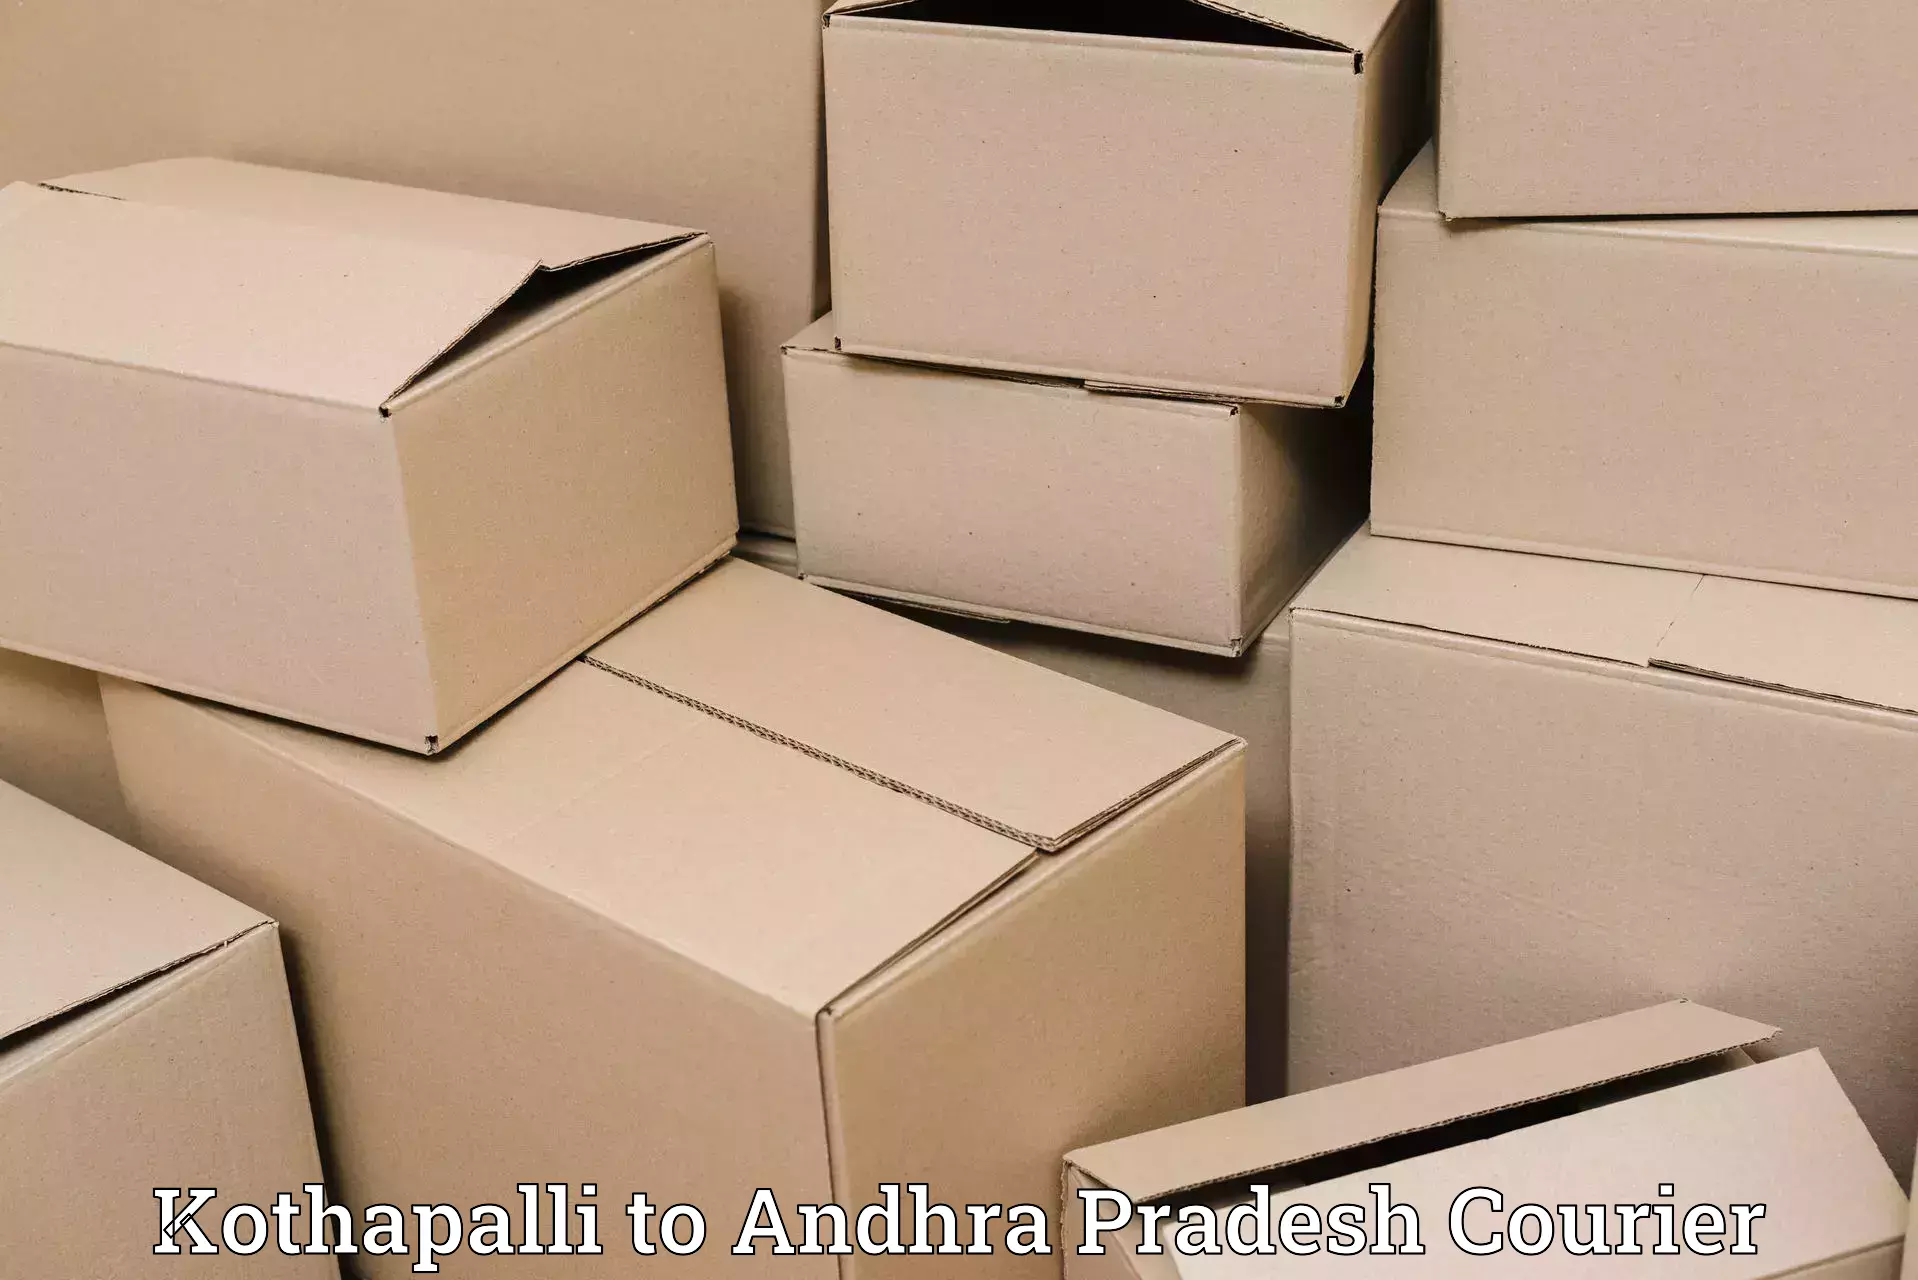 Efficient parcel service Kothapalli to Bhimadole